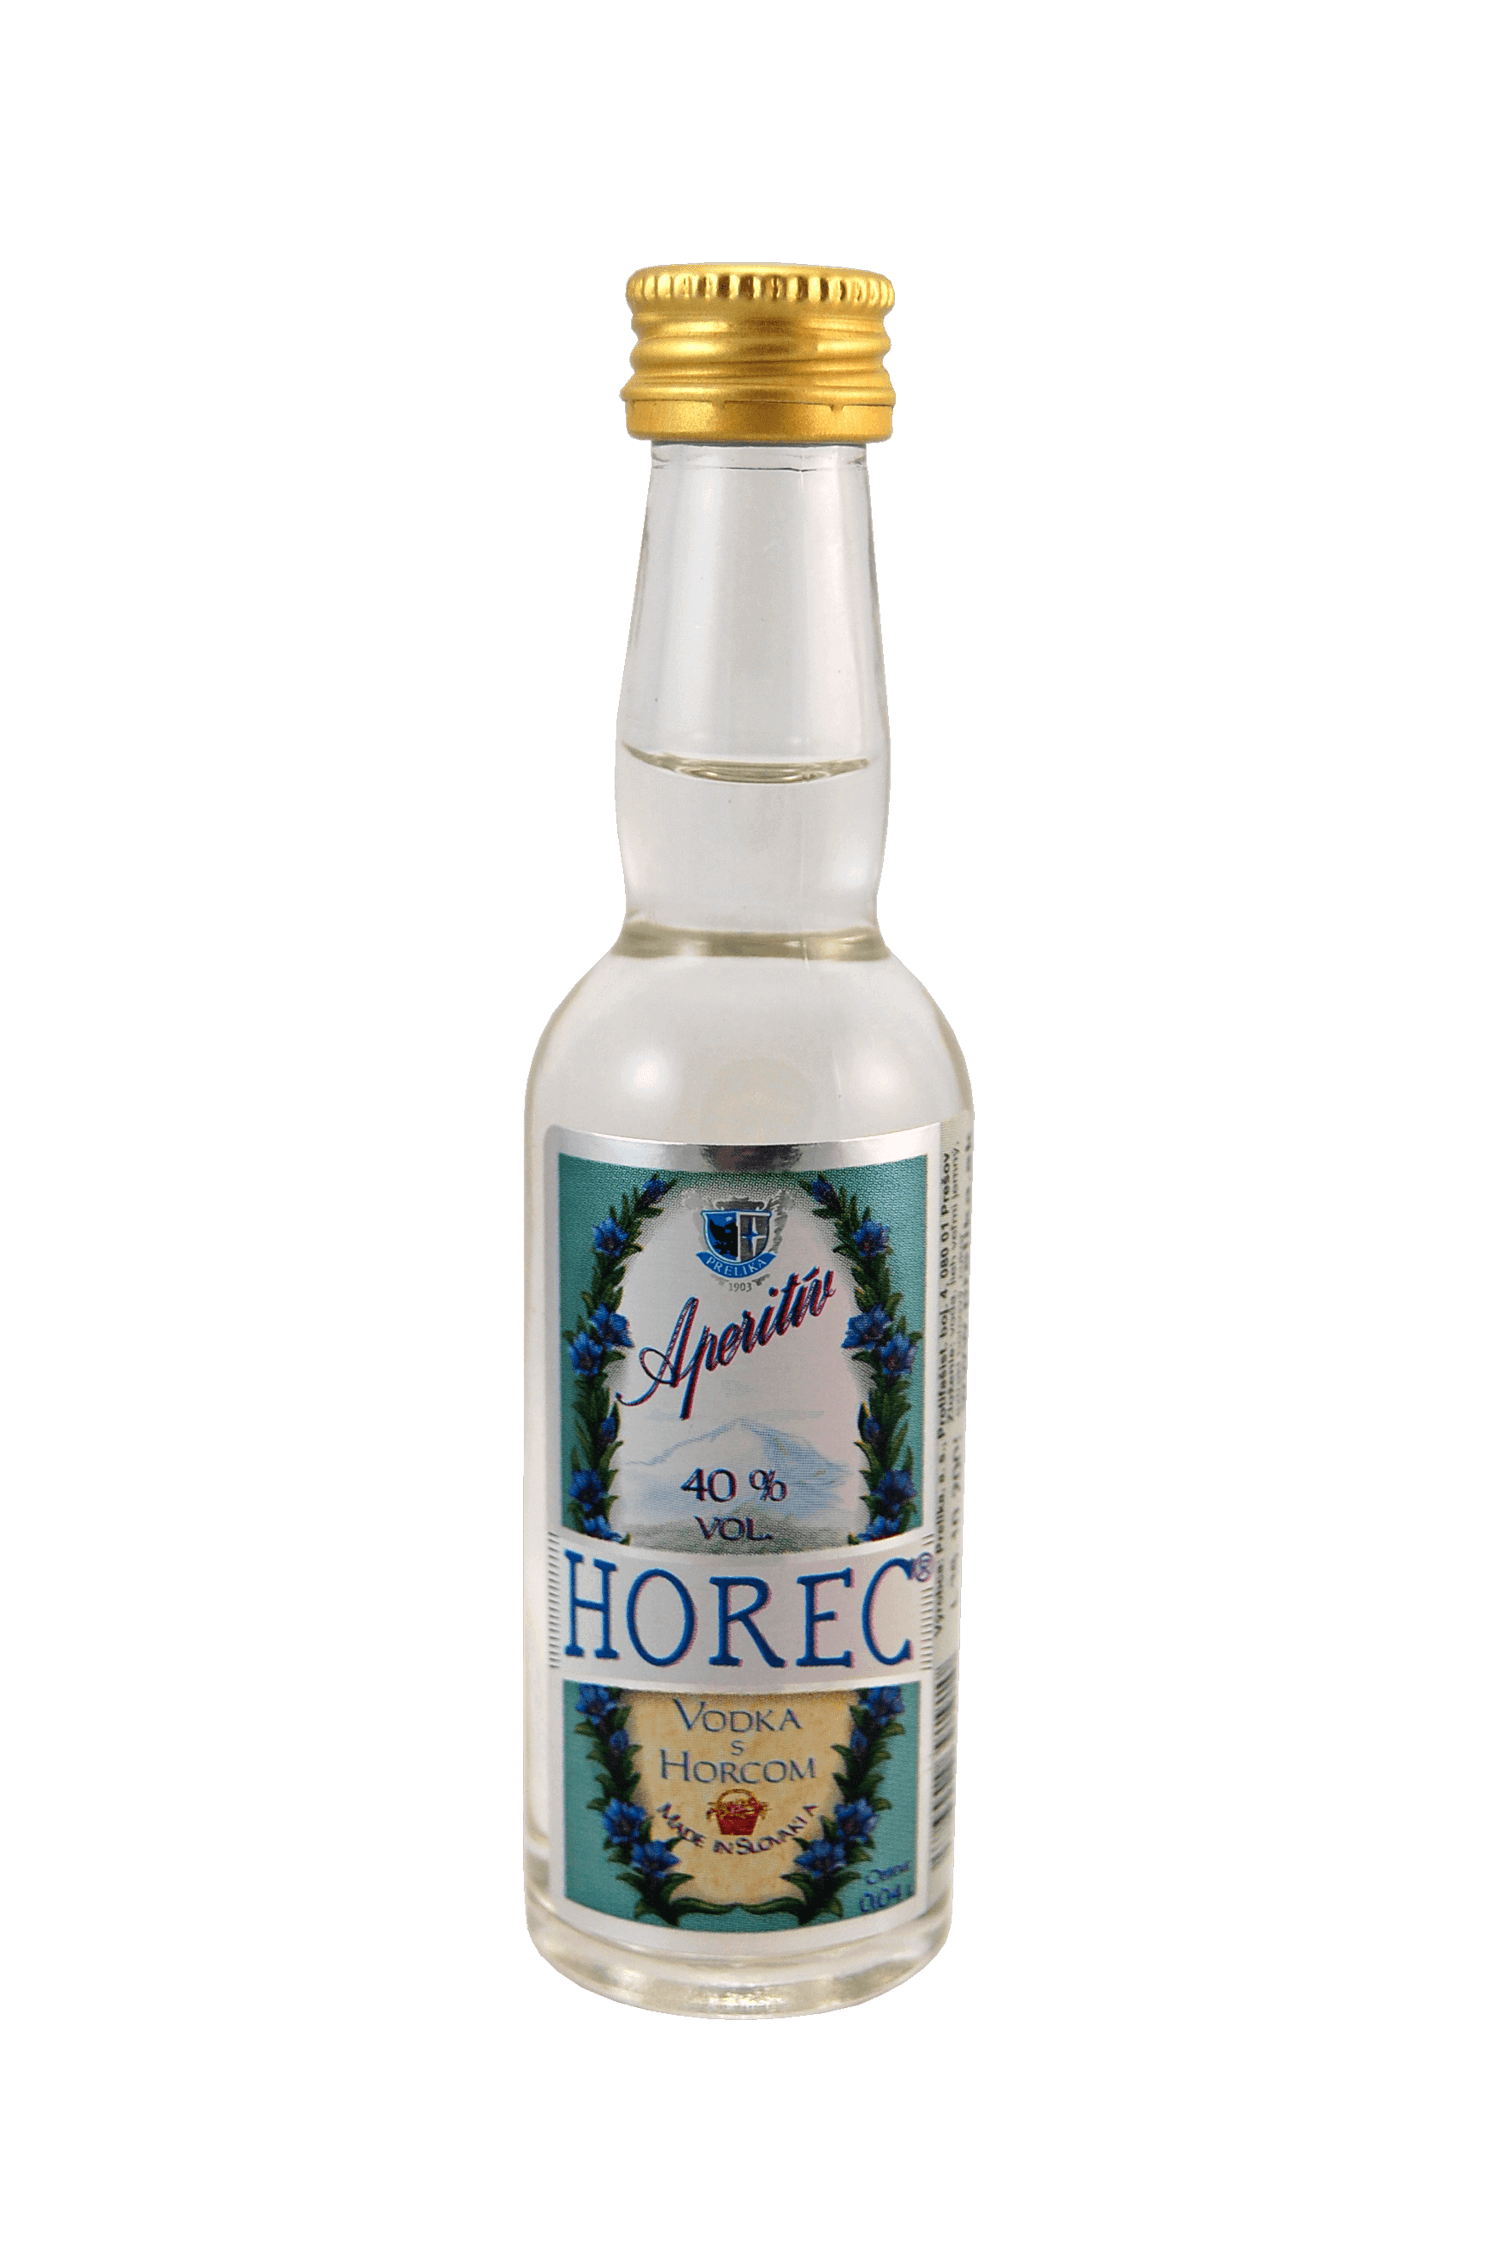 Horec – Vodka s Horcom